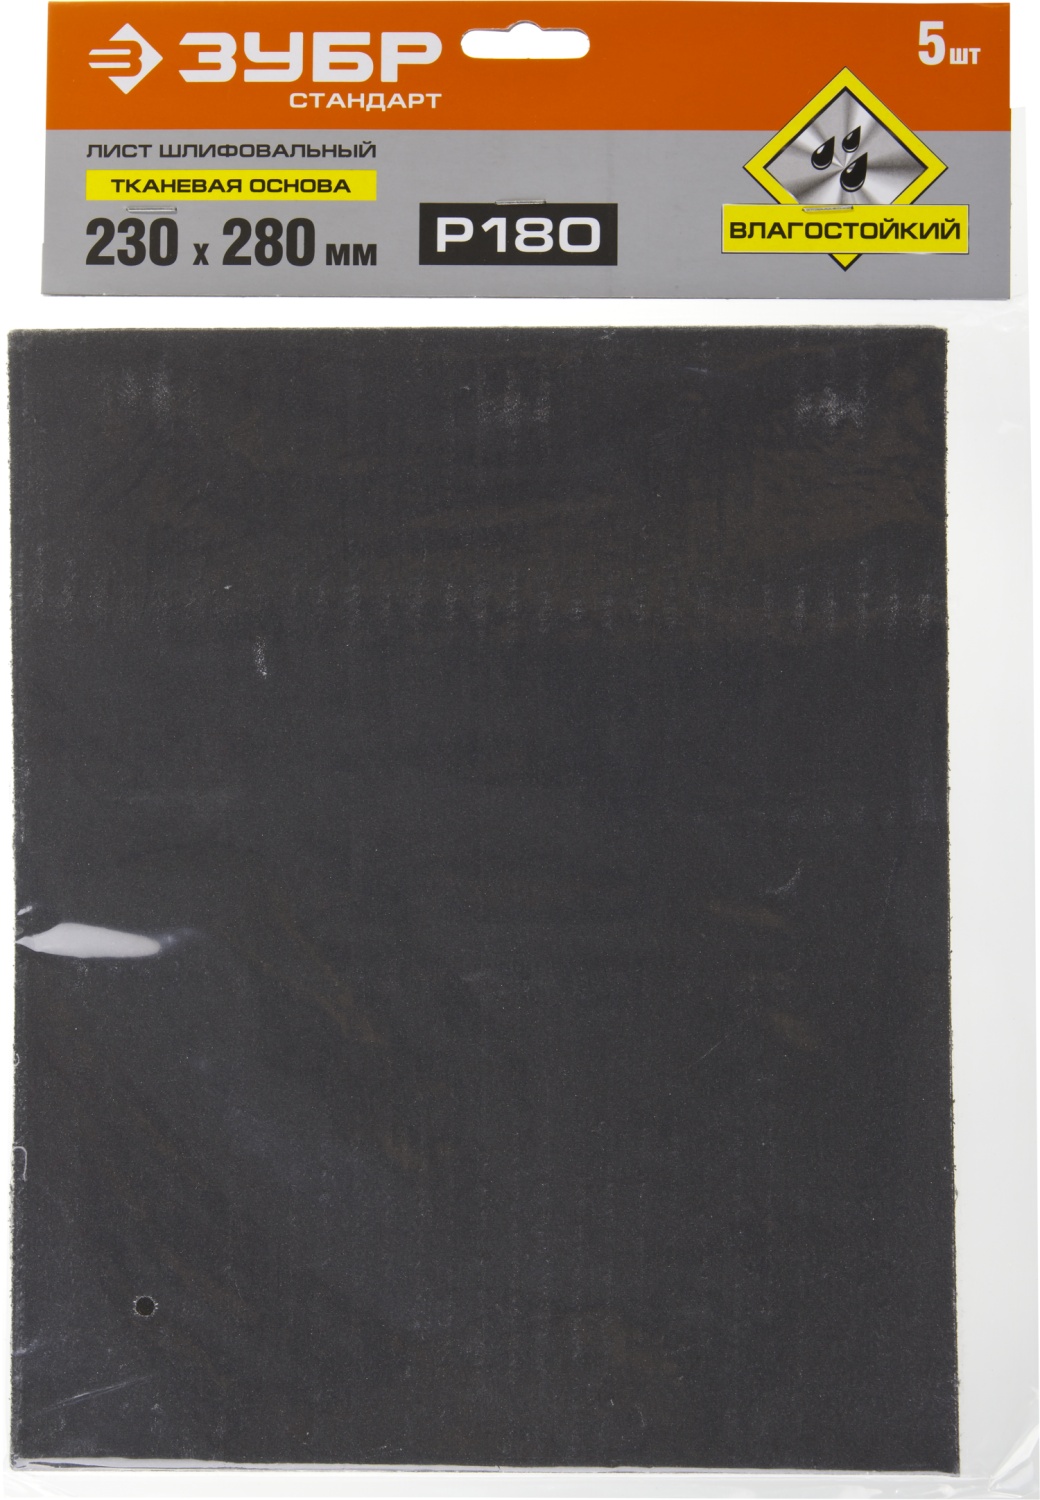 ЗУБР Р180, 230 х 280 мм, 5 шт, водостойкий, шлифовальный лист на тканевой основе (35415-180)